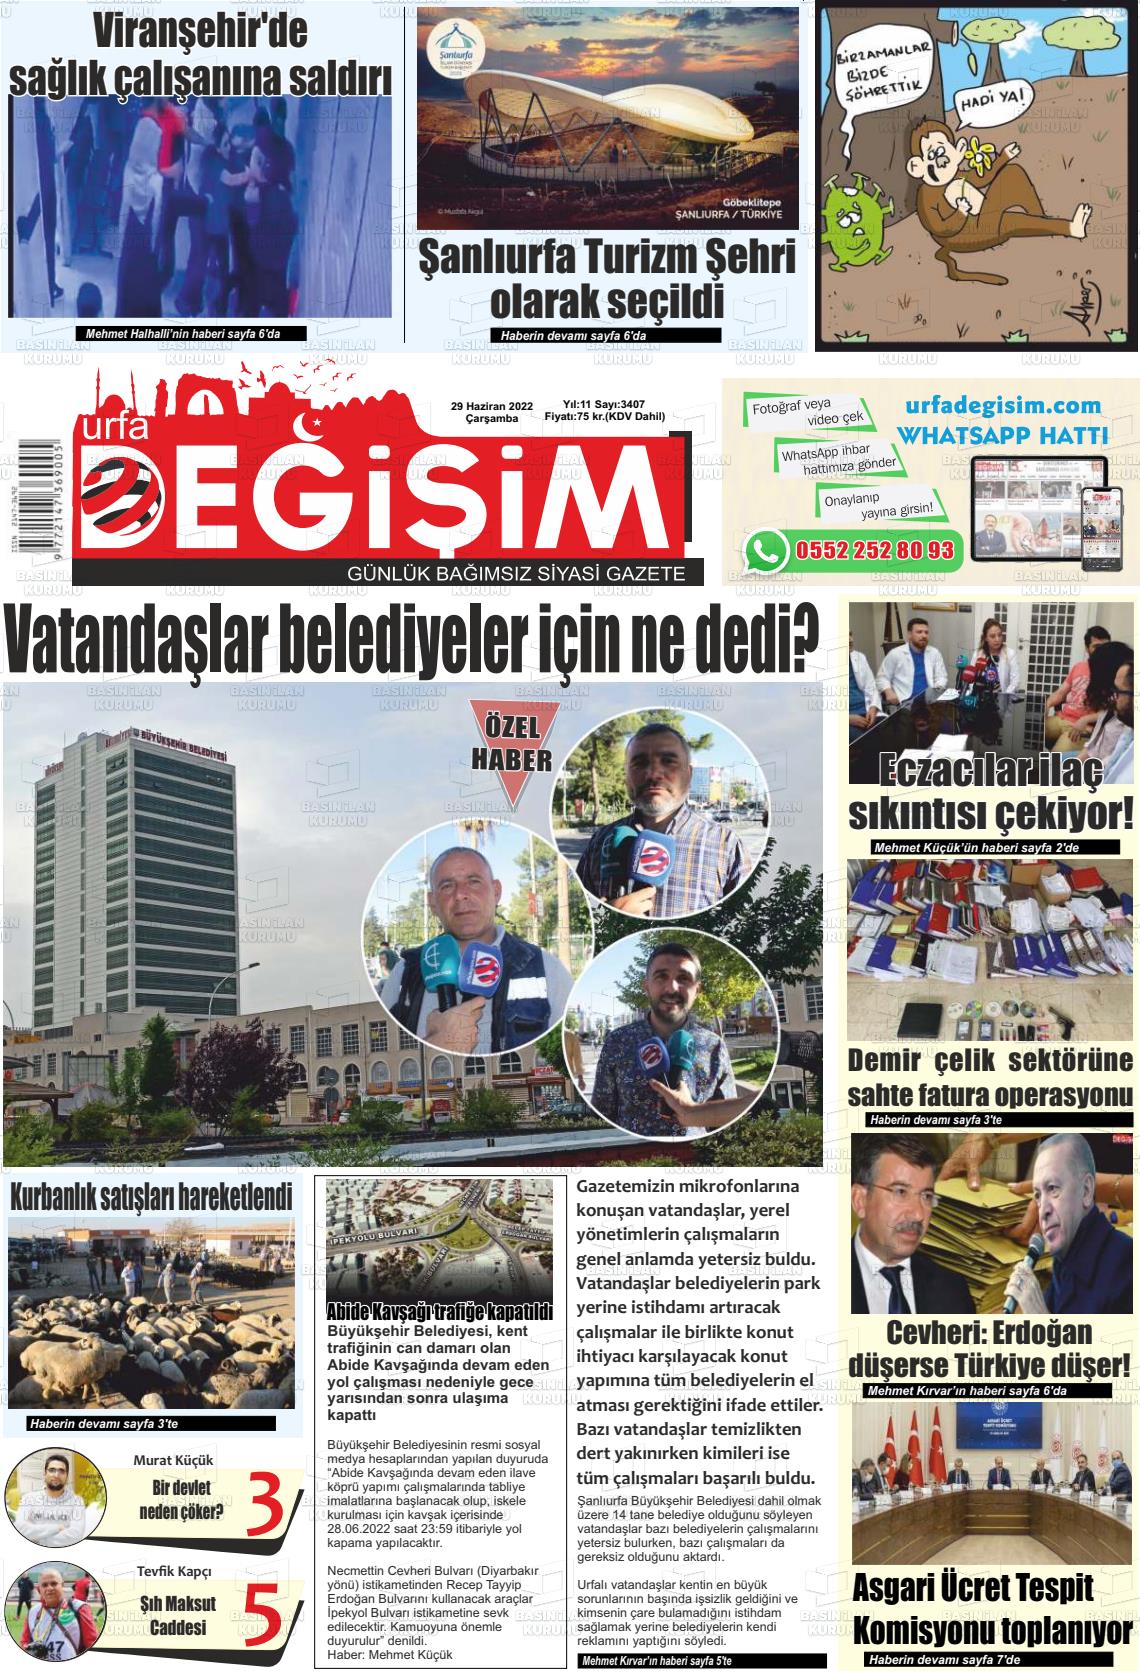 29 Haziran 2022 Urfa Değişim Gazete Manşeti